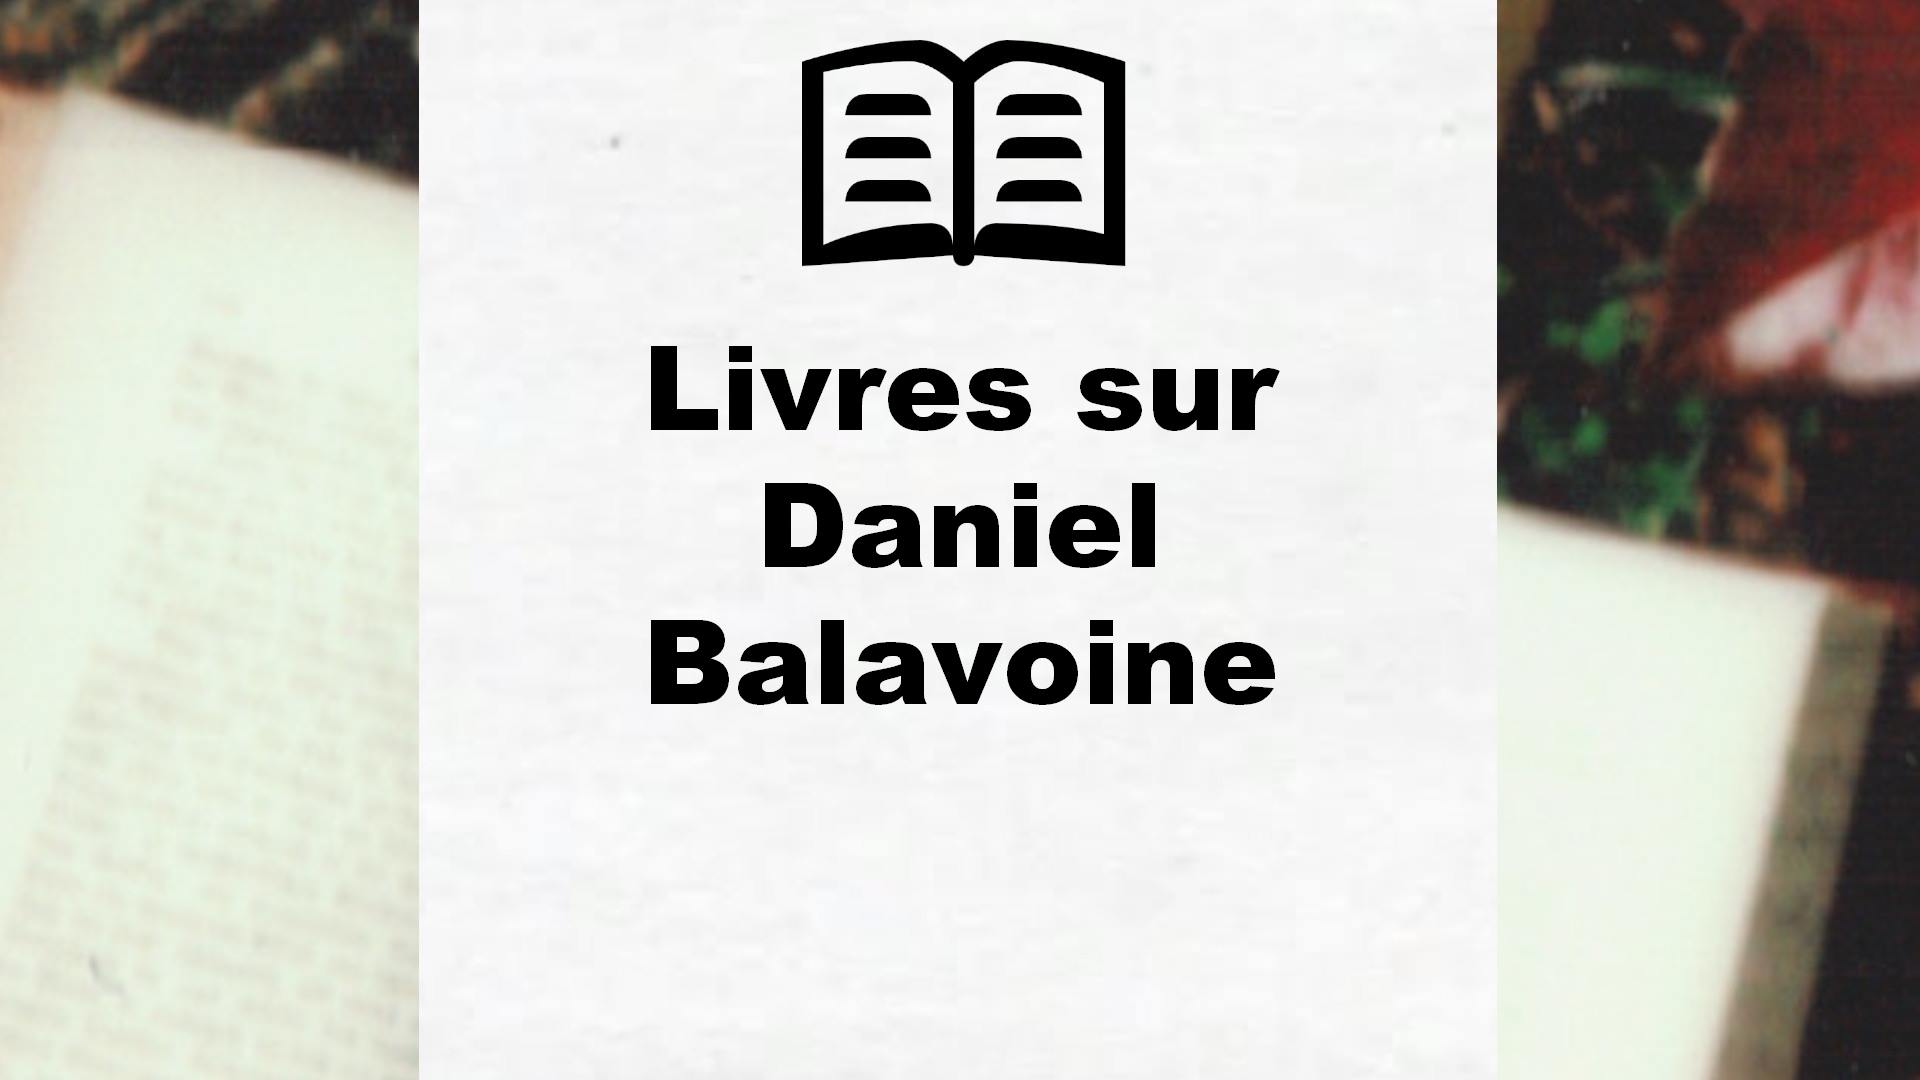 Livres sur Daniel Balavoine